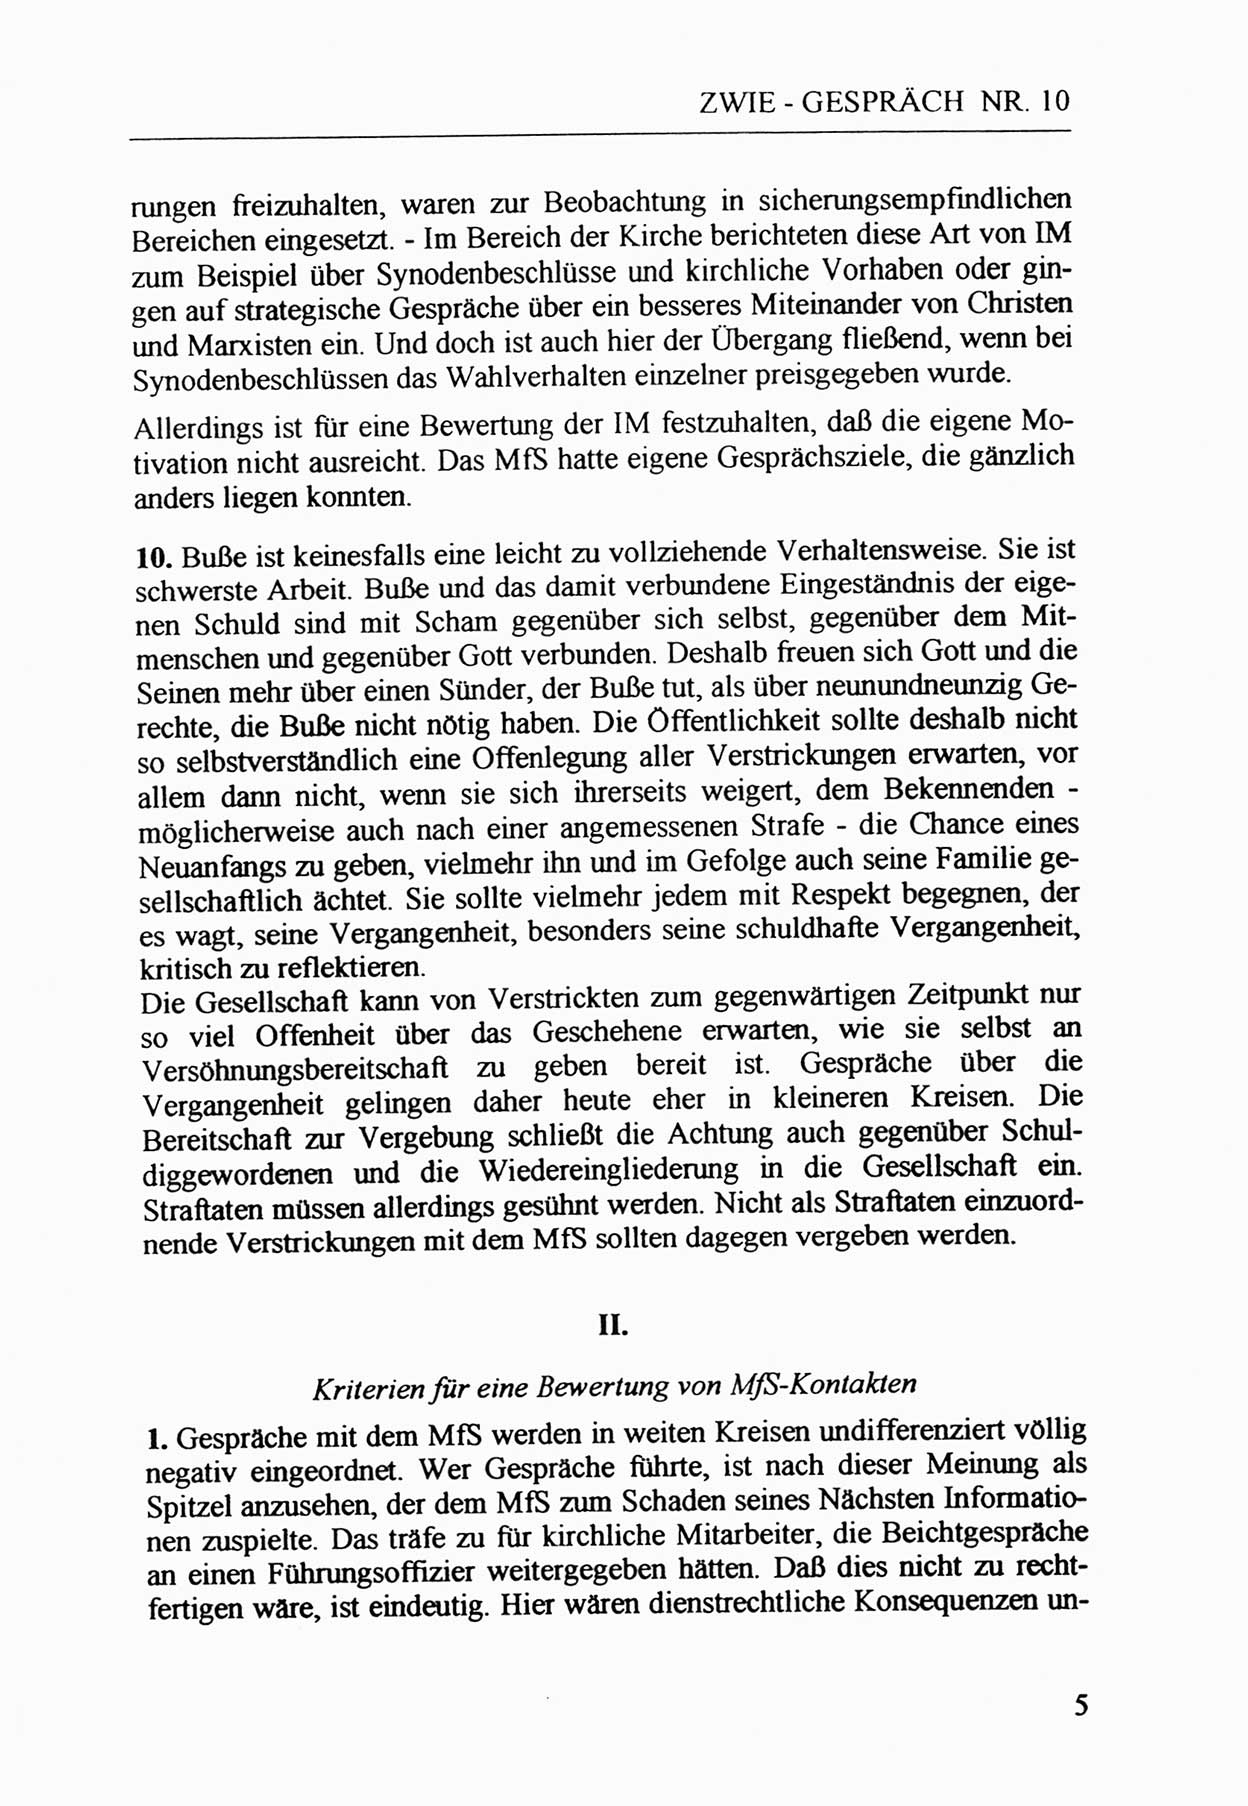 Zwie-Gespräch, Beiträge zur Aufarbeitung der Staatssicherheits-Vergangenheit [Deutsche Demokratische Republik (DDR)], Ausgabe Nr. 10, Berlin 1992, Seite 5 (Zwie-Gespr. Ausg. 10 1992, S. 5)